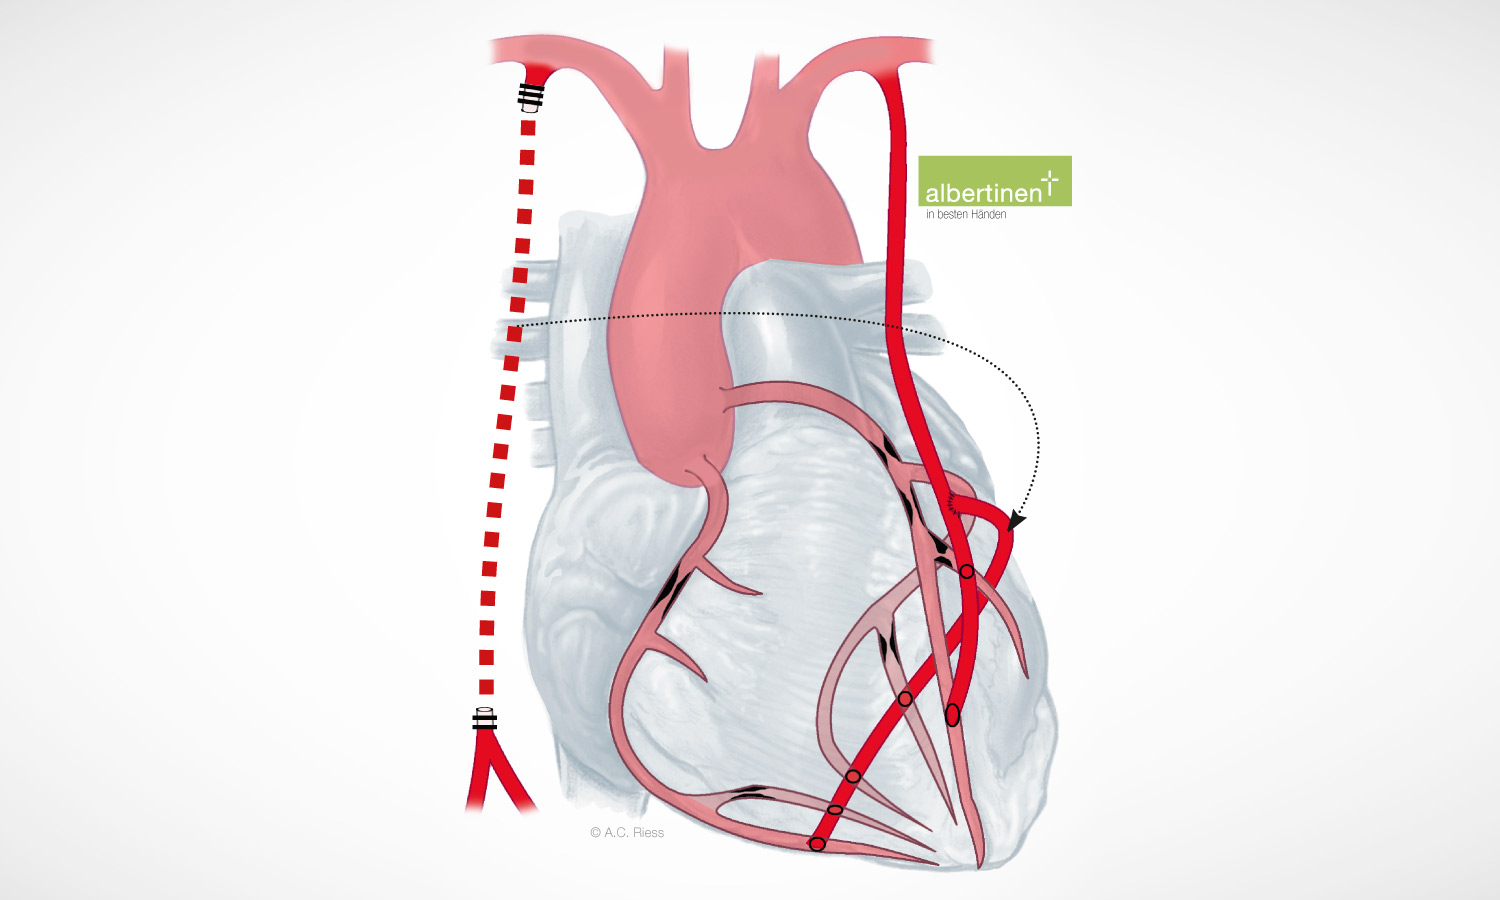 Schematische Darstellung der komplett arteriellen Revaskularisation